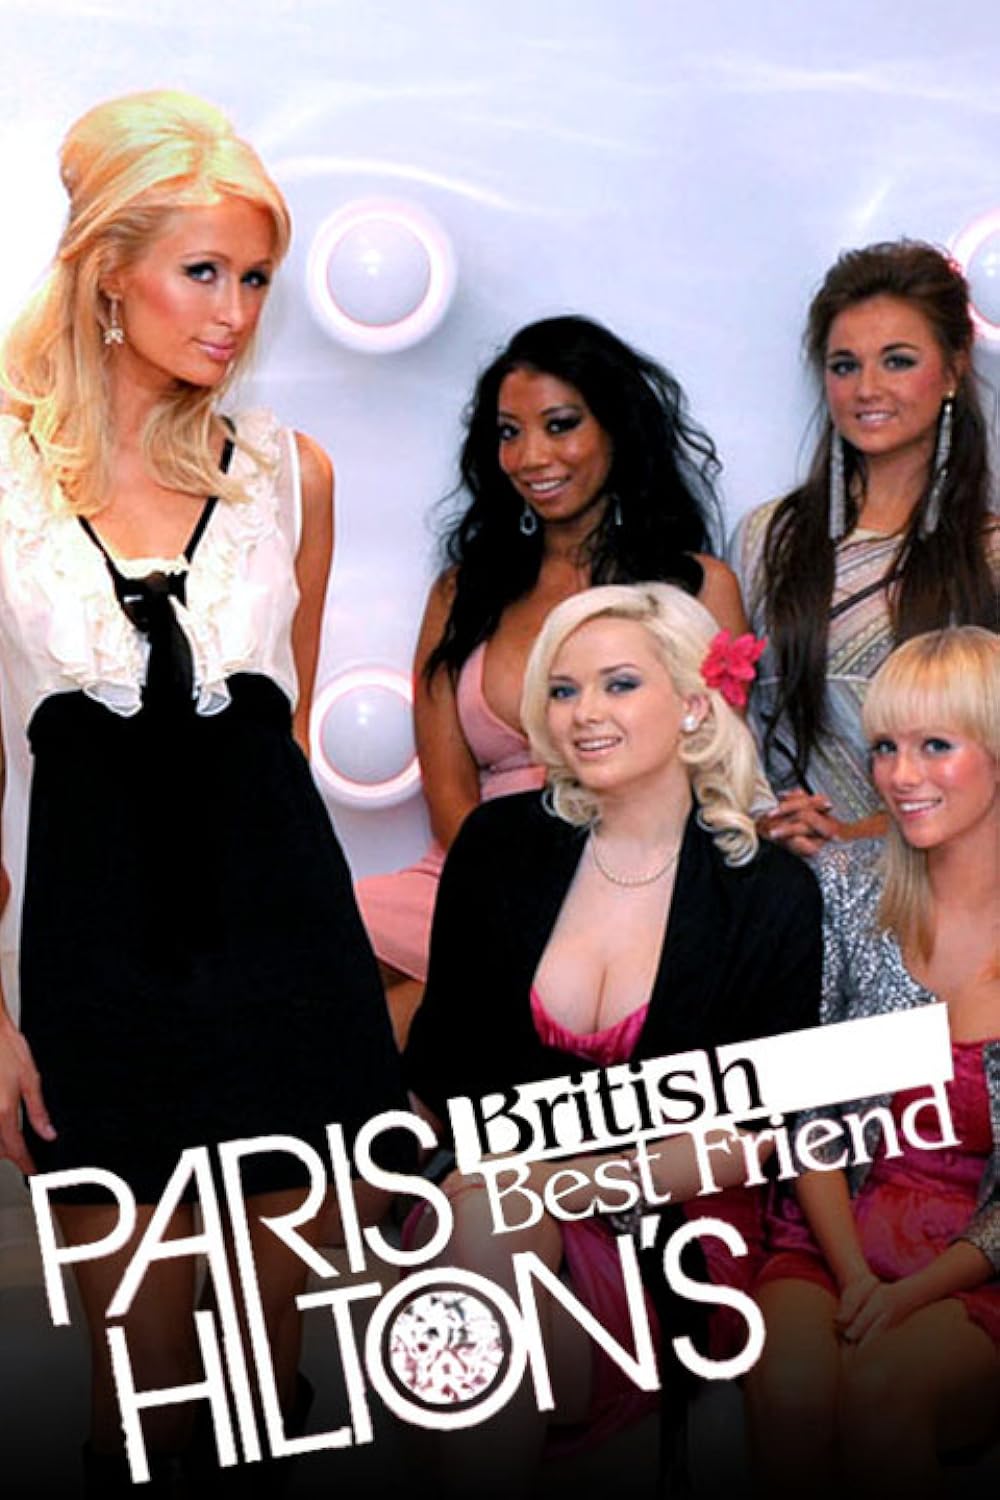 Paris Hiltons British Best Friend